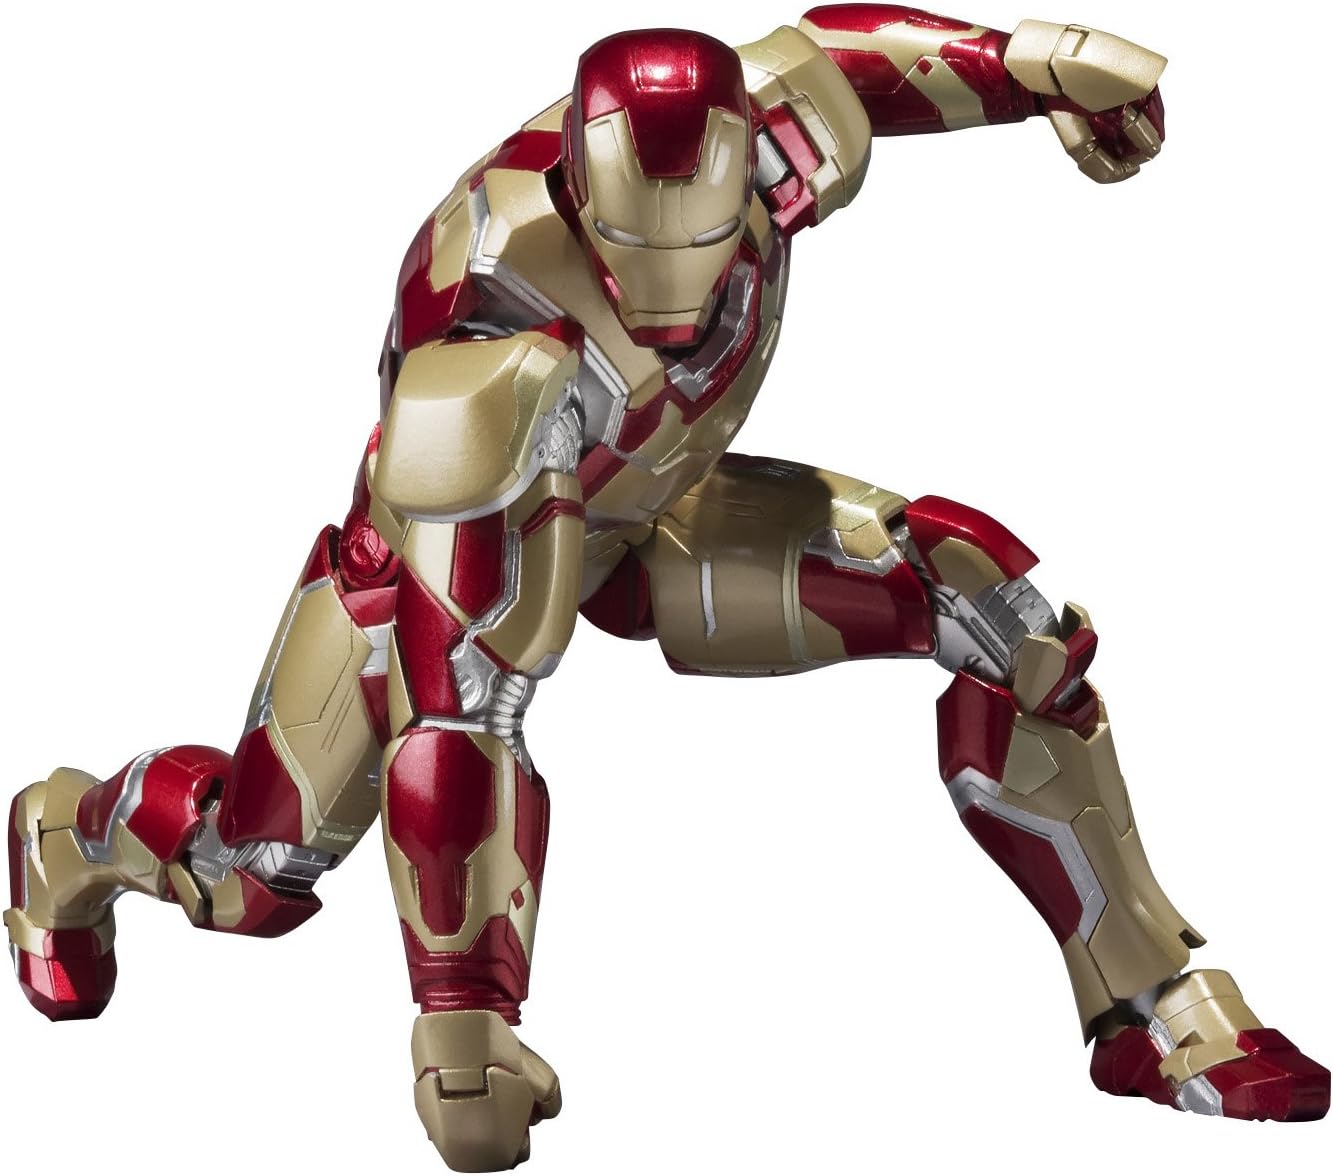 S.H. Figuarts - Iron Man Mark 42 "Iron Man 3" | animota